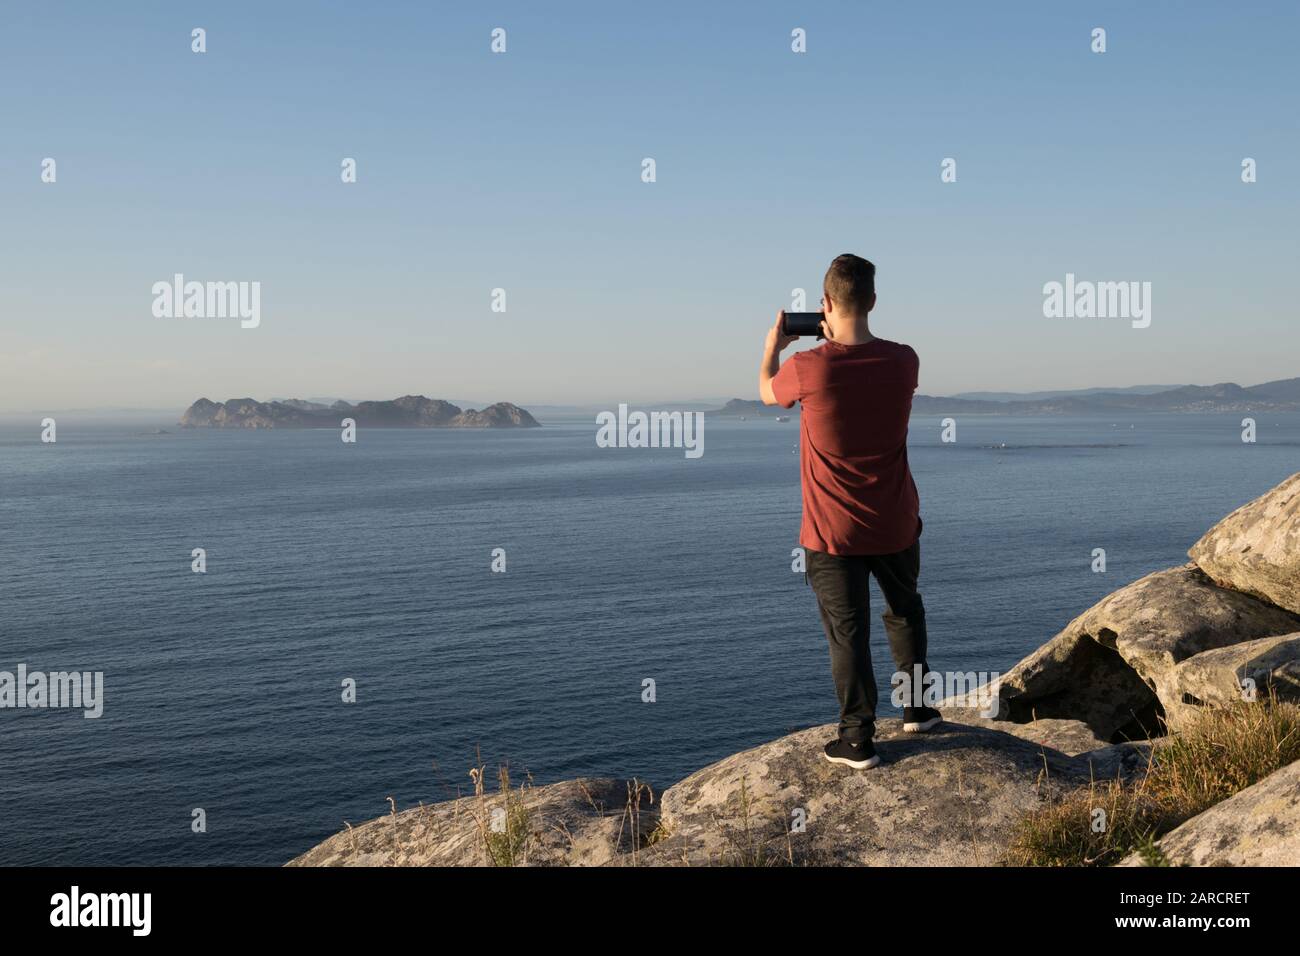 Rückansicht eines Jungen, der vom Berg ein Foto vom Meer gemacht hat Stockfoto